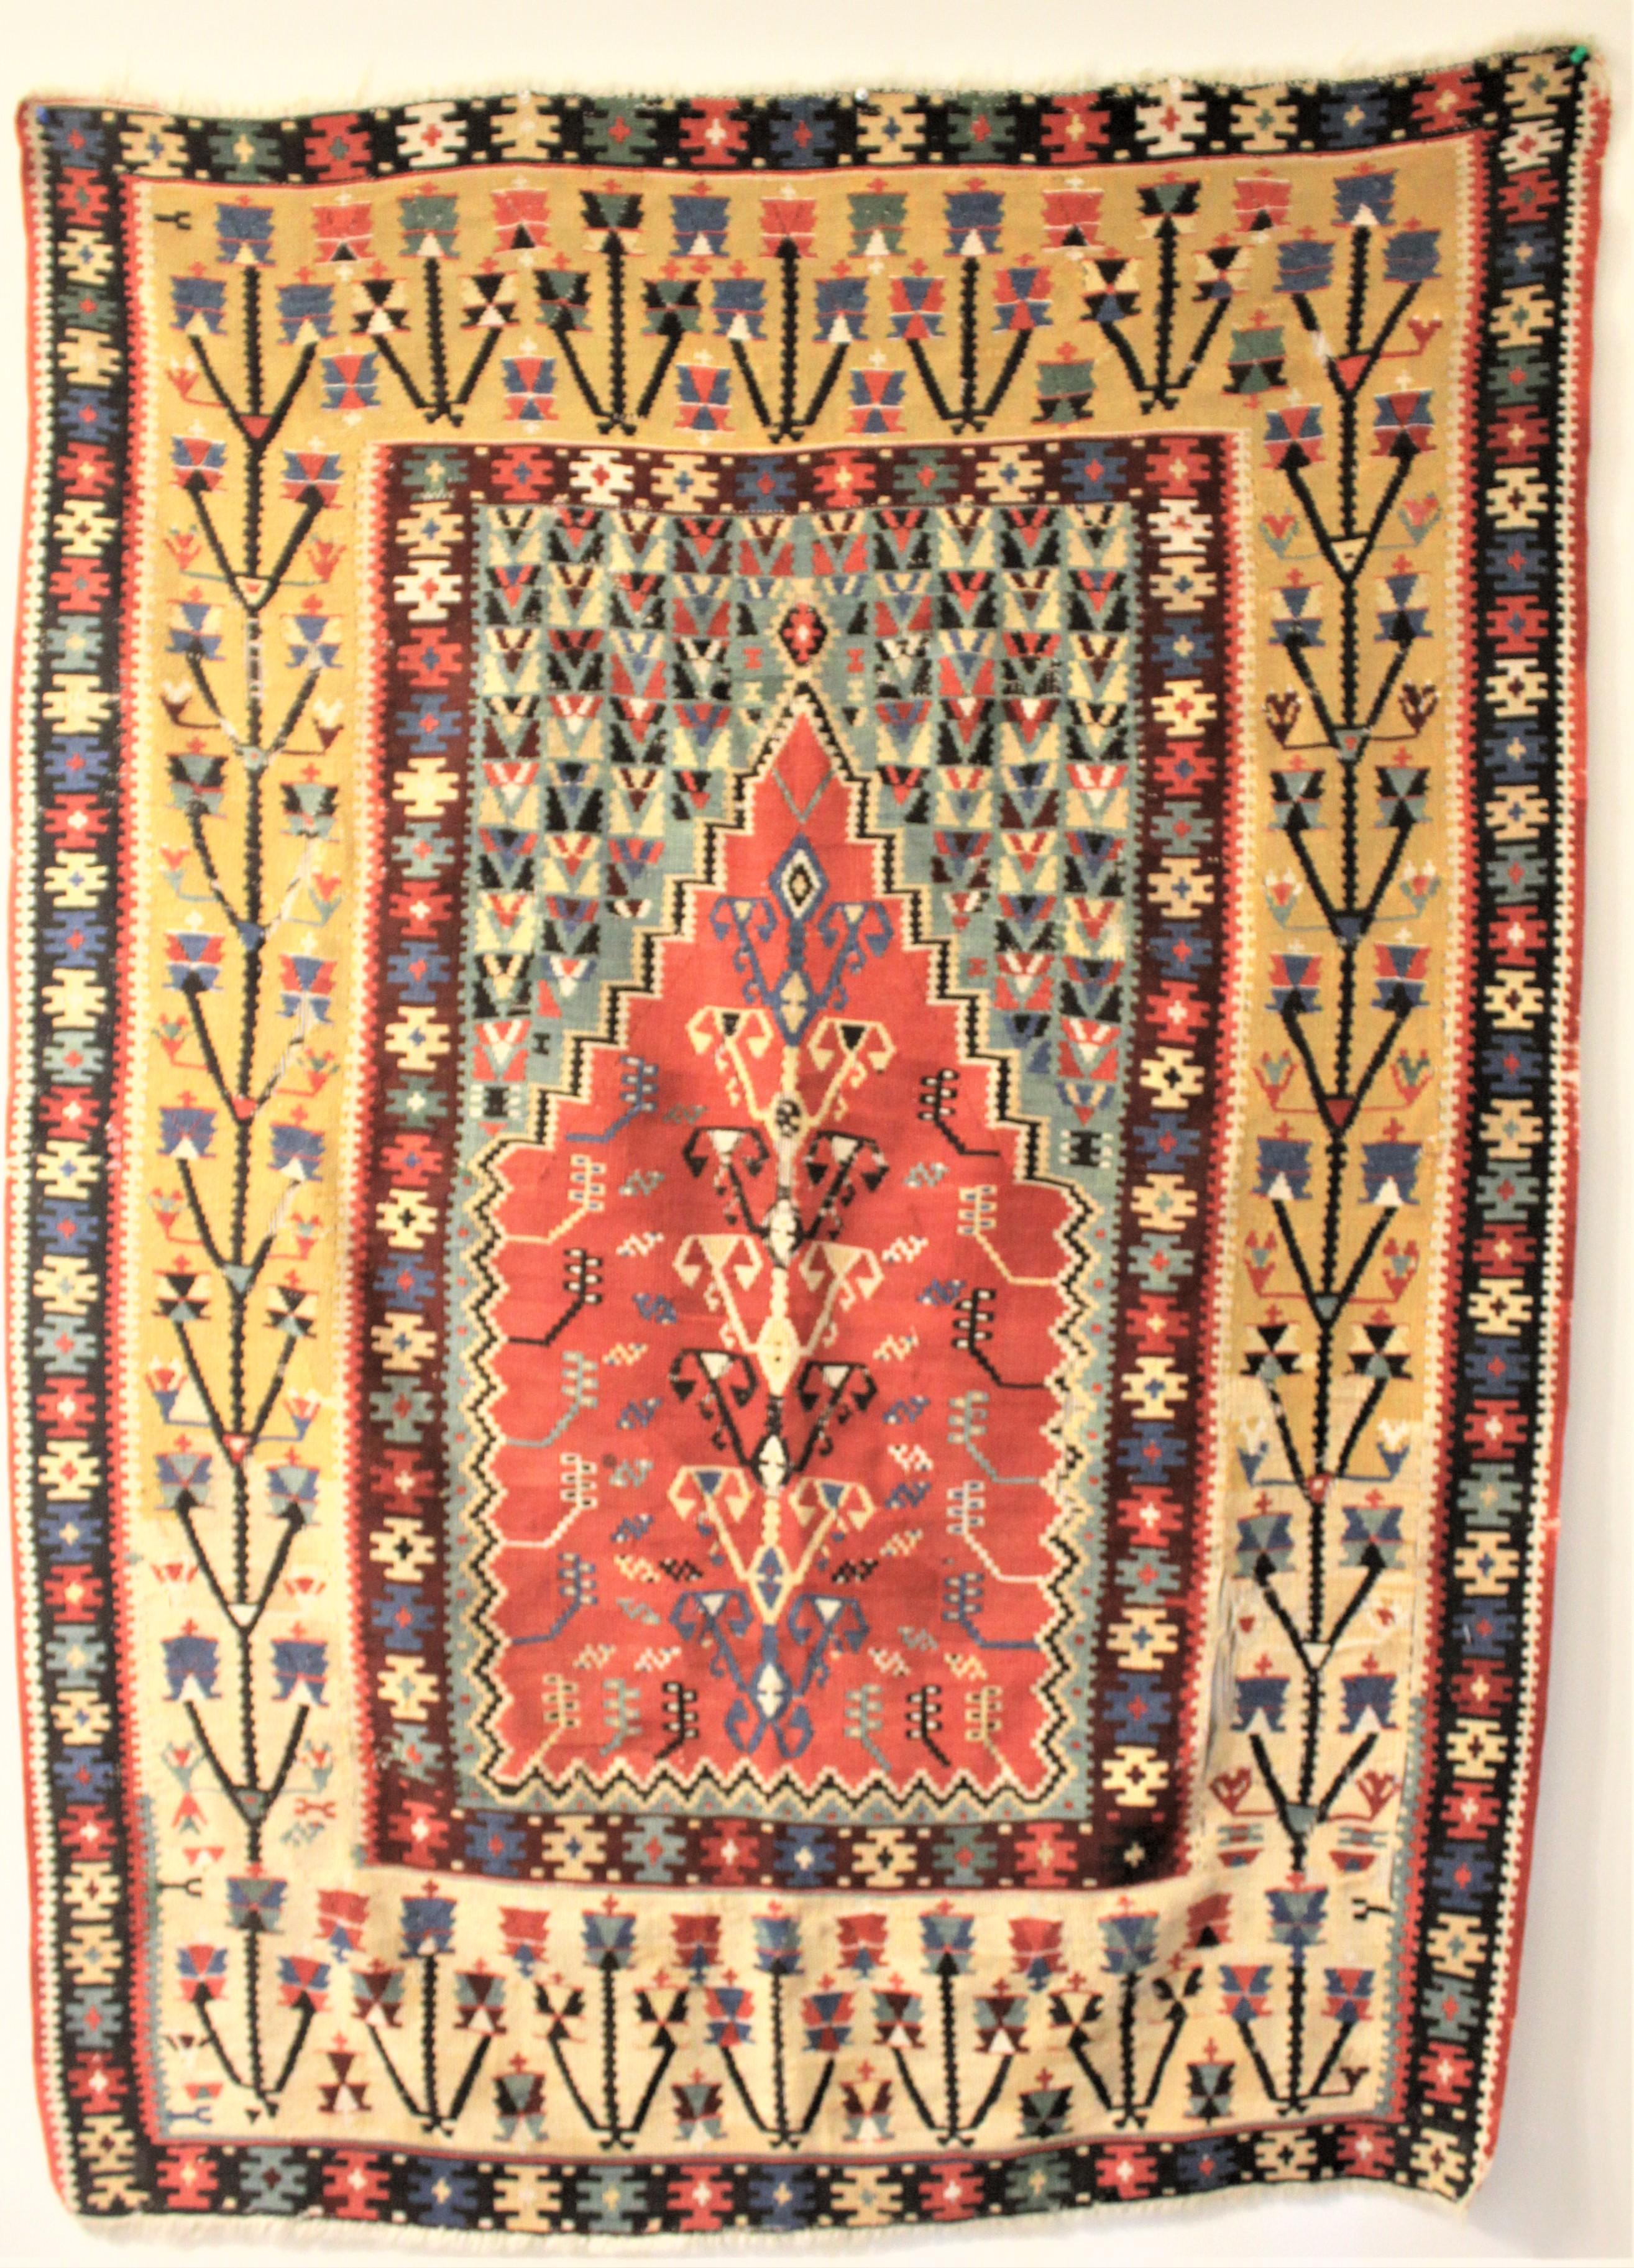 Dieser antike handgewebte Gebetsteppich wurde in der heutigen Türkei hergestellt und stammt aus der Zeit zwischen 1750 und 1780. Der Hintergrund dieses Teppichs ist in Pastelltönen gehalten, die das gedämpfte Rot des zentralen 